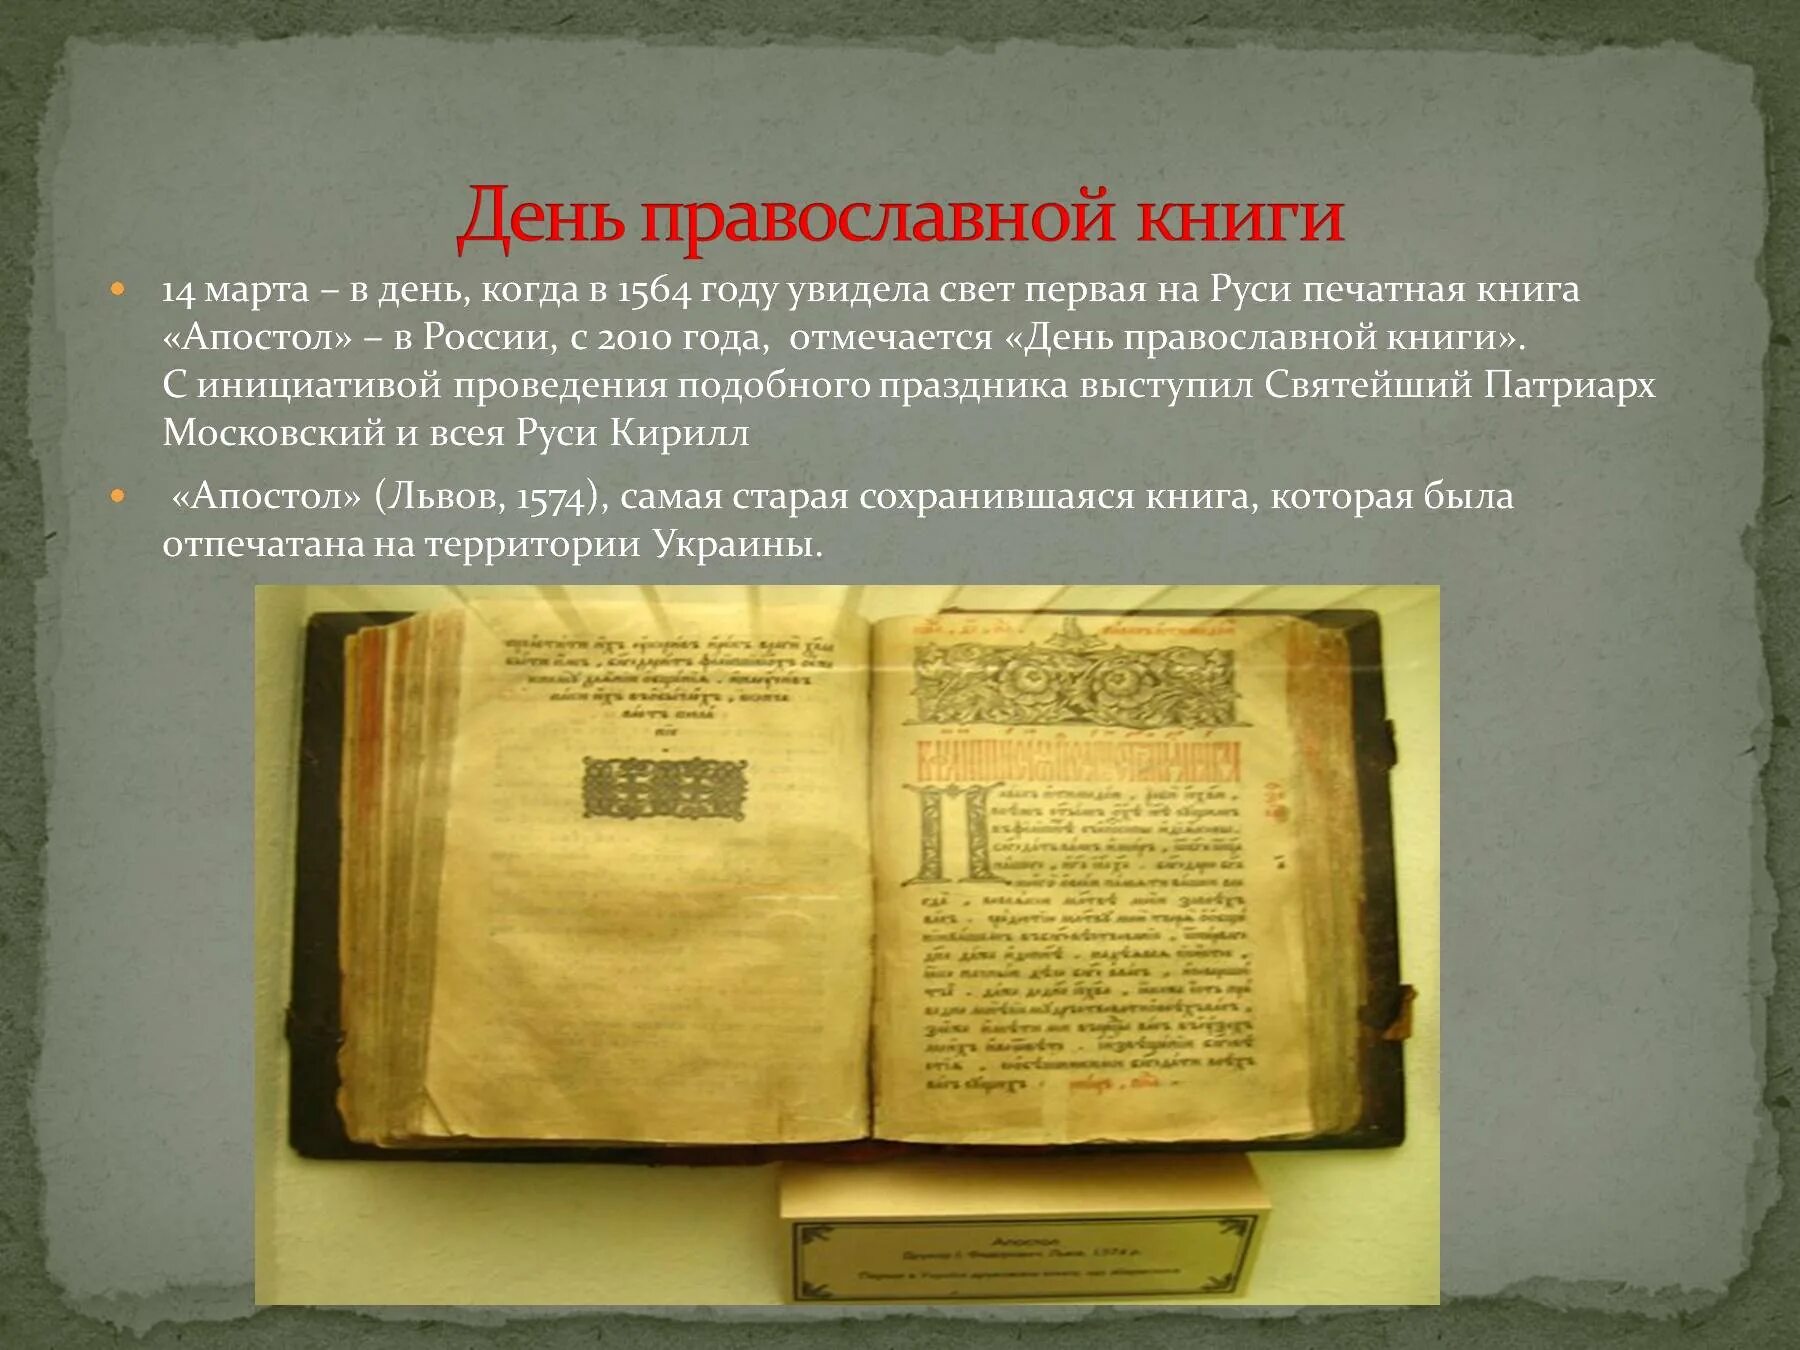 Первая печатная книга на Руси 1564. Апостол 1564 первая печатная книга. Первая книга на Руси Апостол. Книга Апостол 1564 года. Какие были первые книги на руси